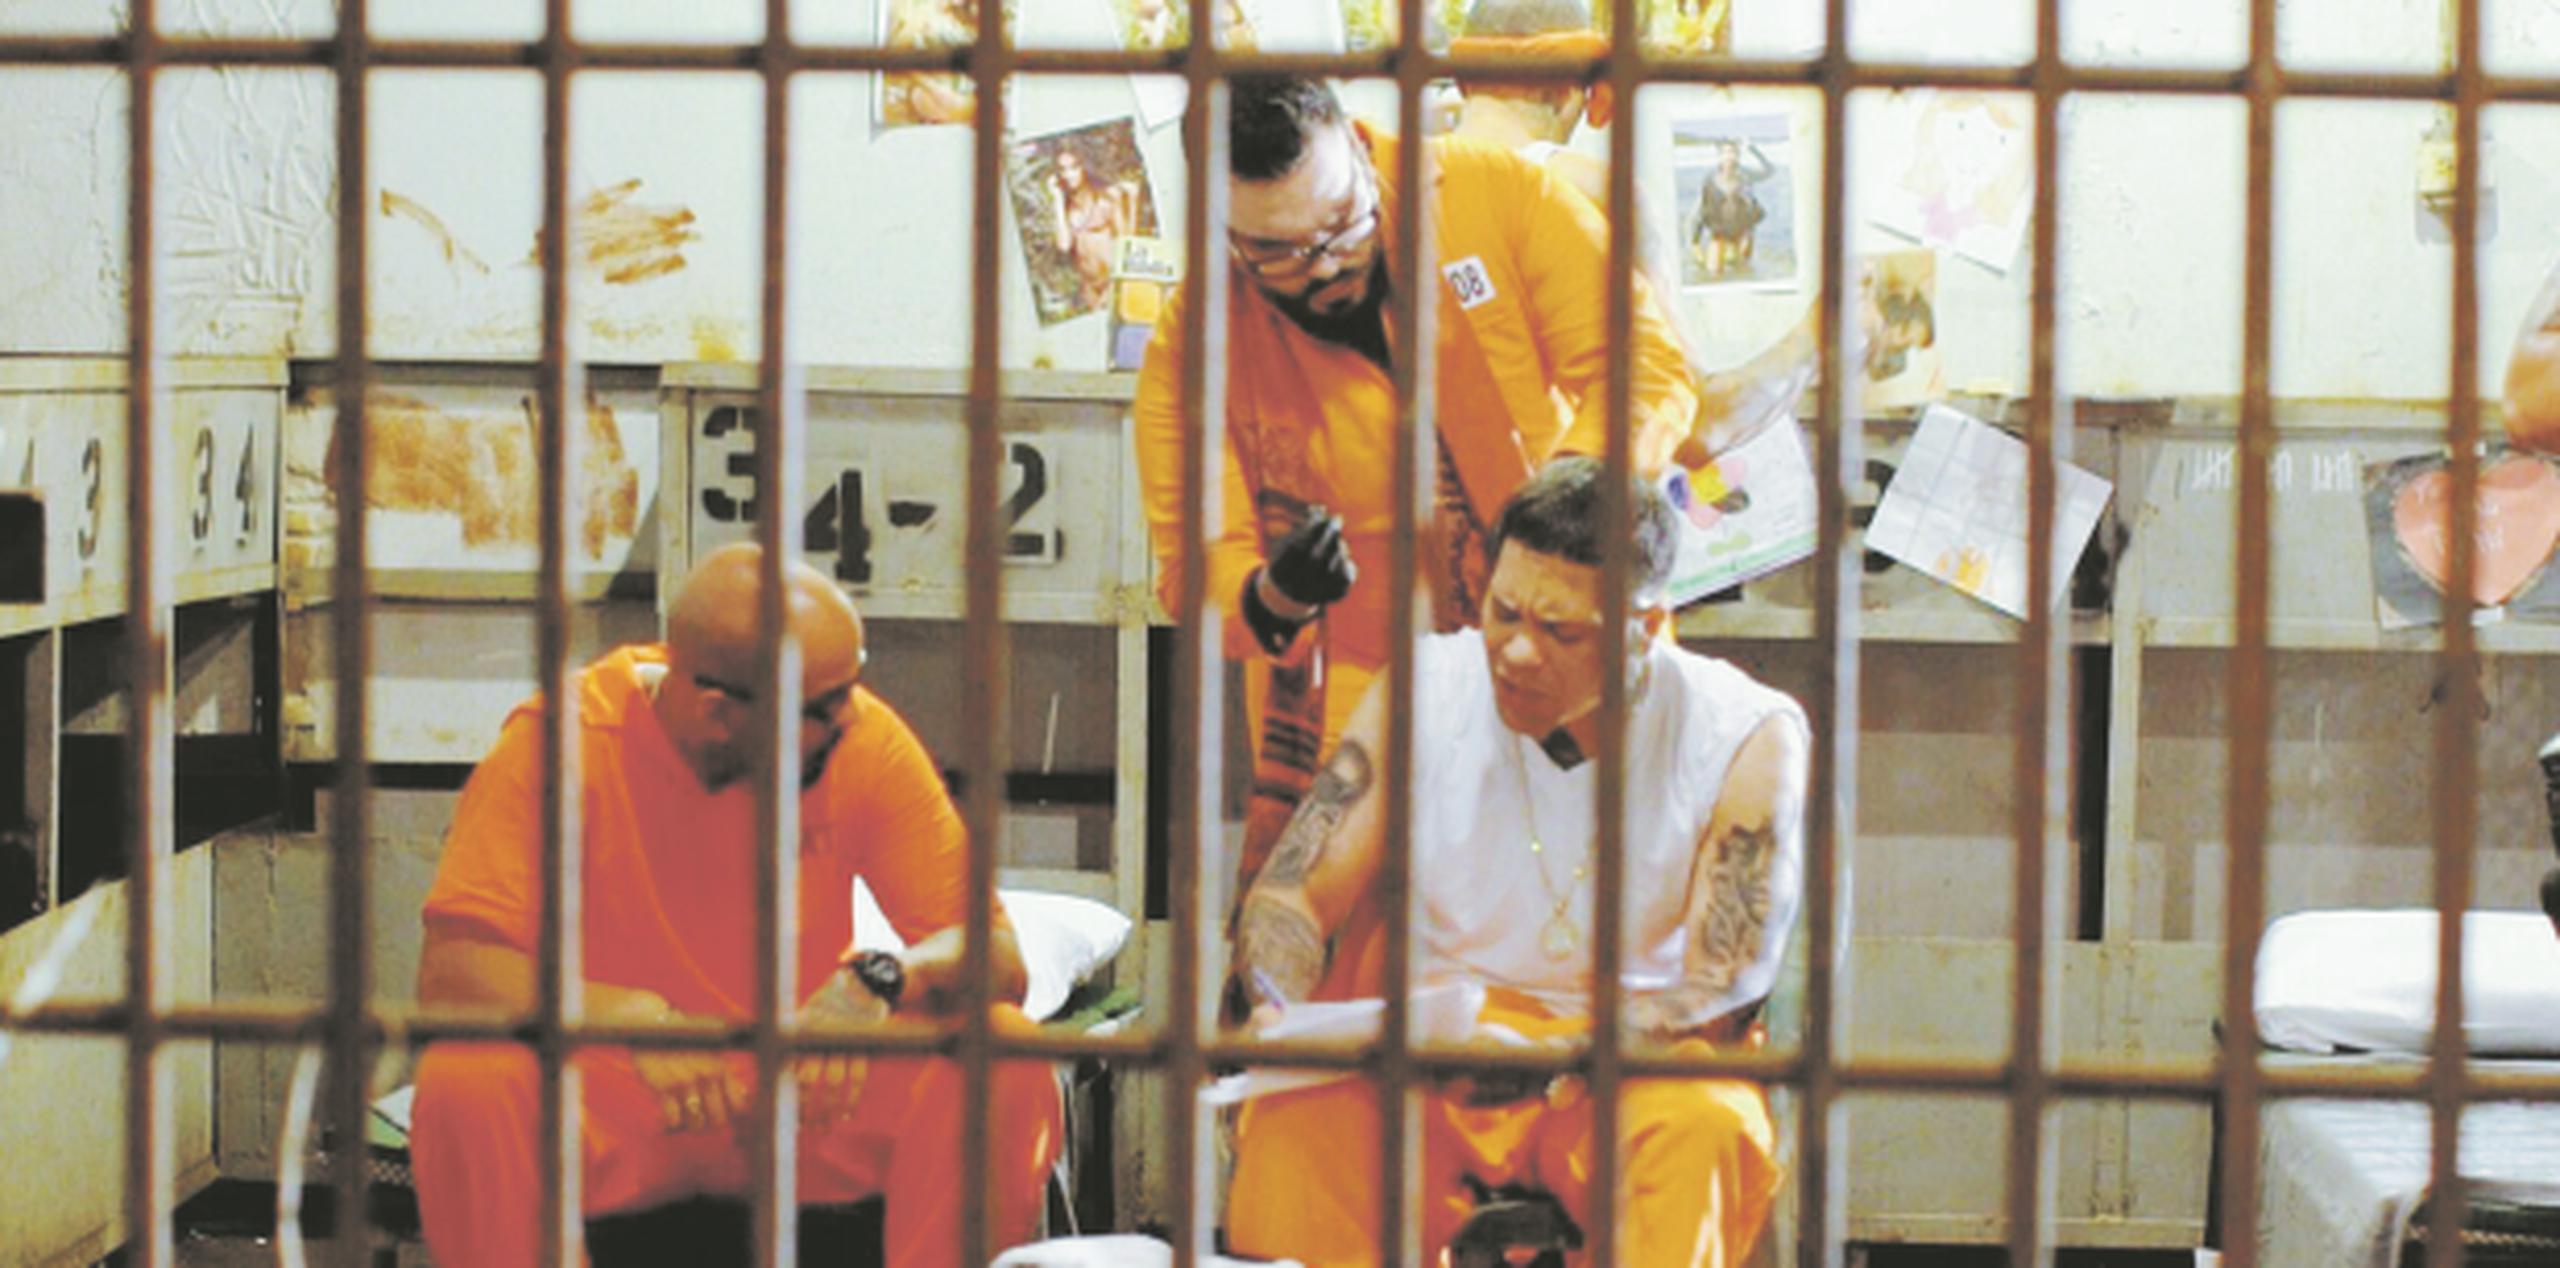 Aunque el deseo de ambos artistas era poder grabar el videoclip desde una prisión real, tuvieron que conformarse con simular el ambiente de una. (Suministrada)